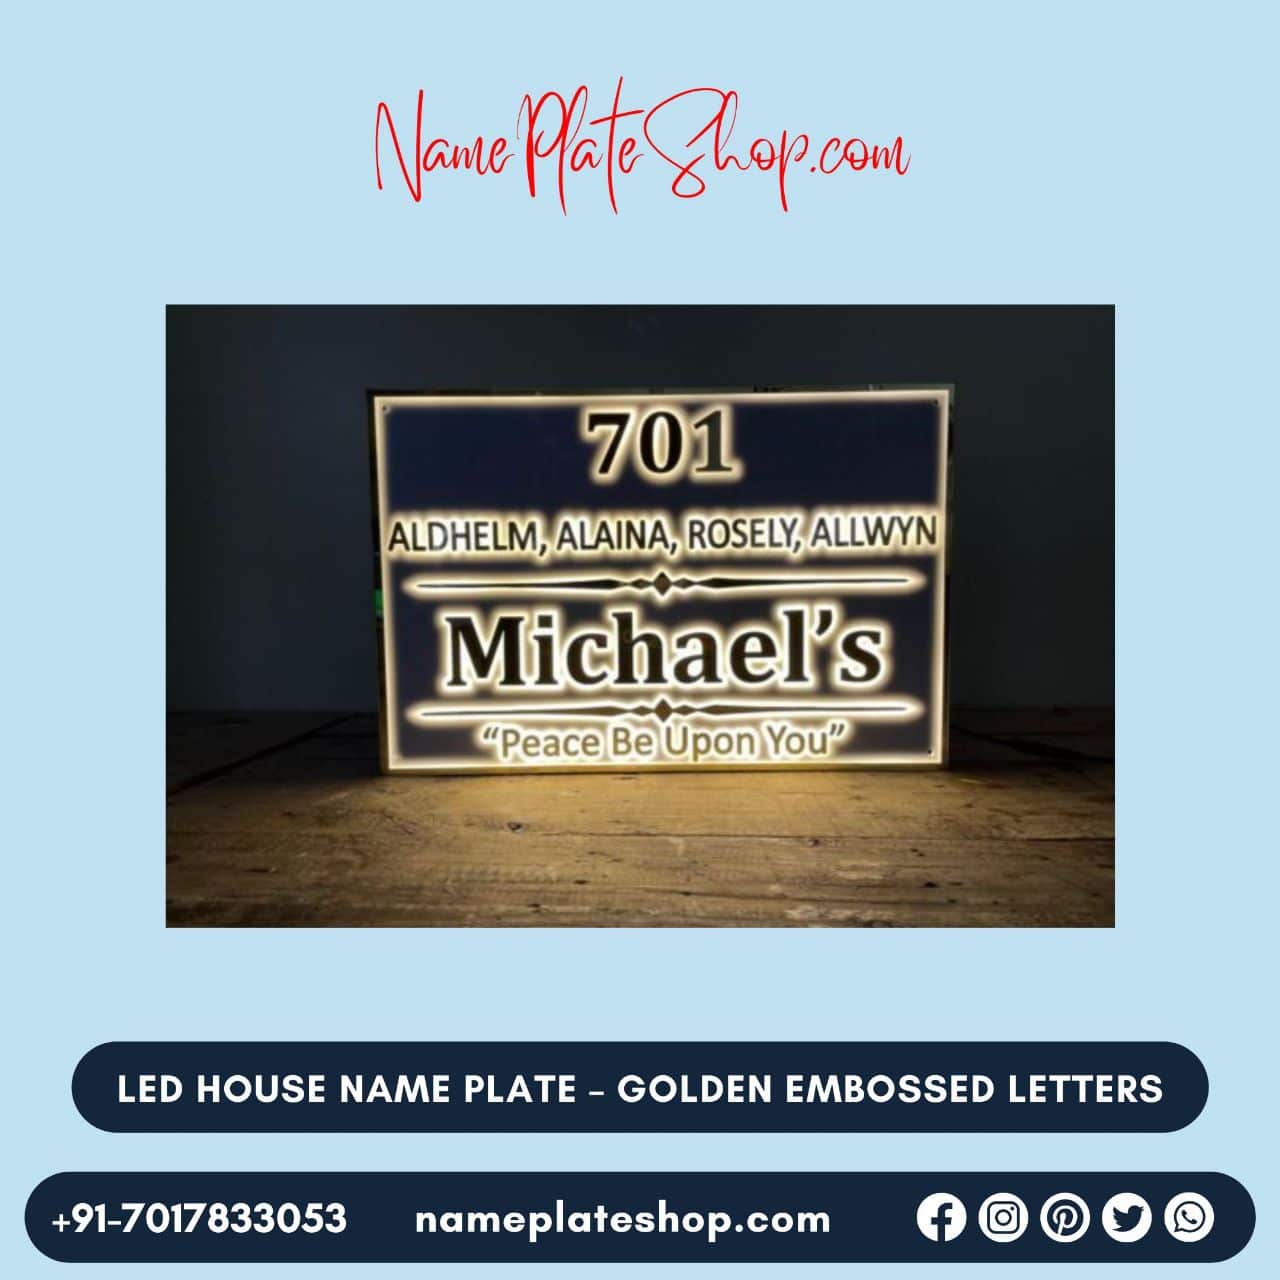 Golden Embossed Letter LED House Nameplate NamePlateShop